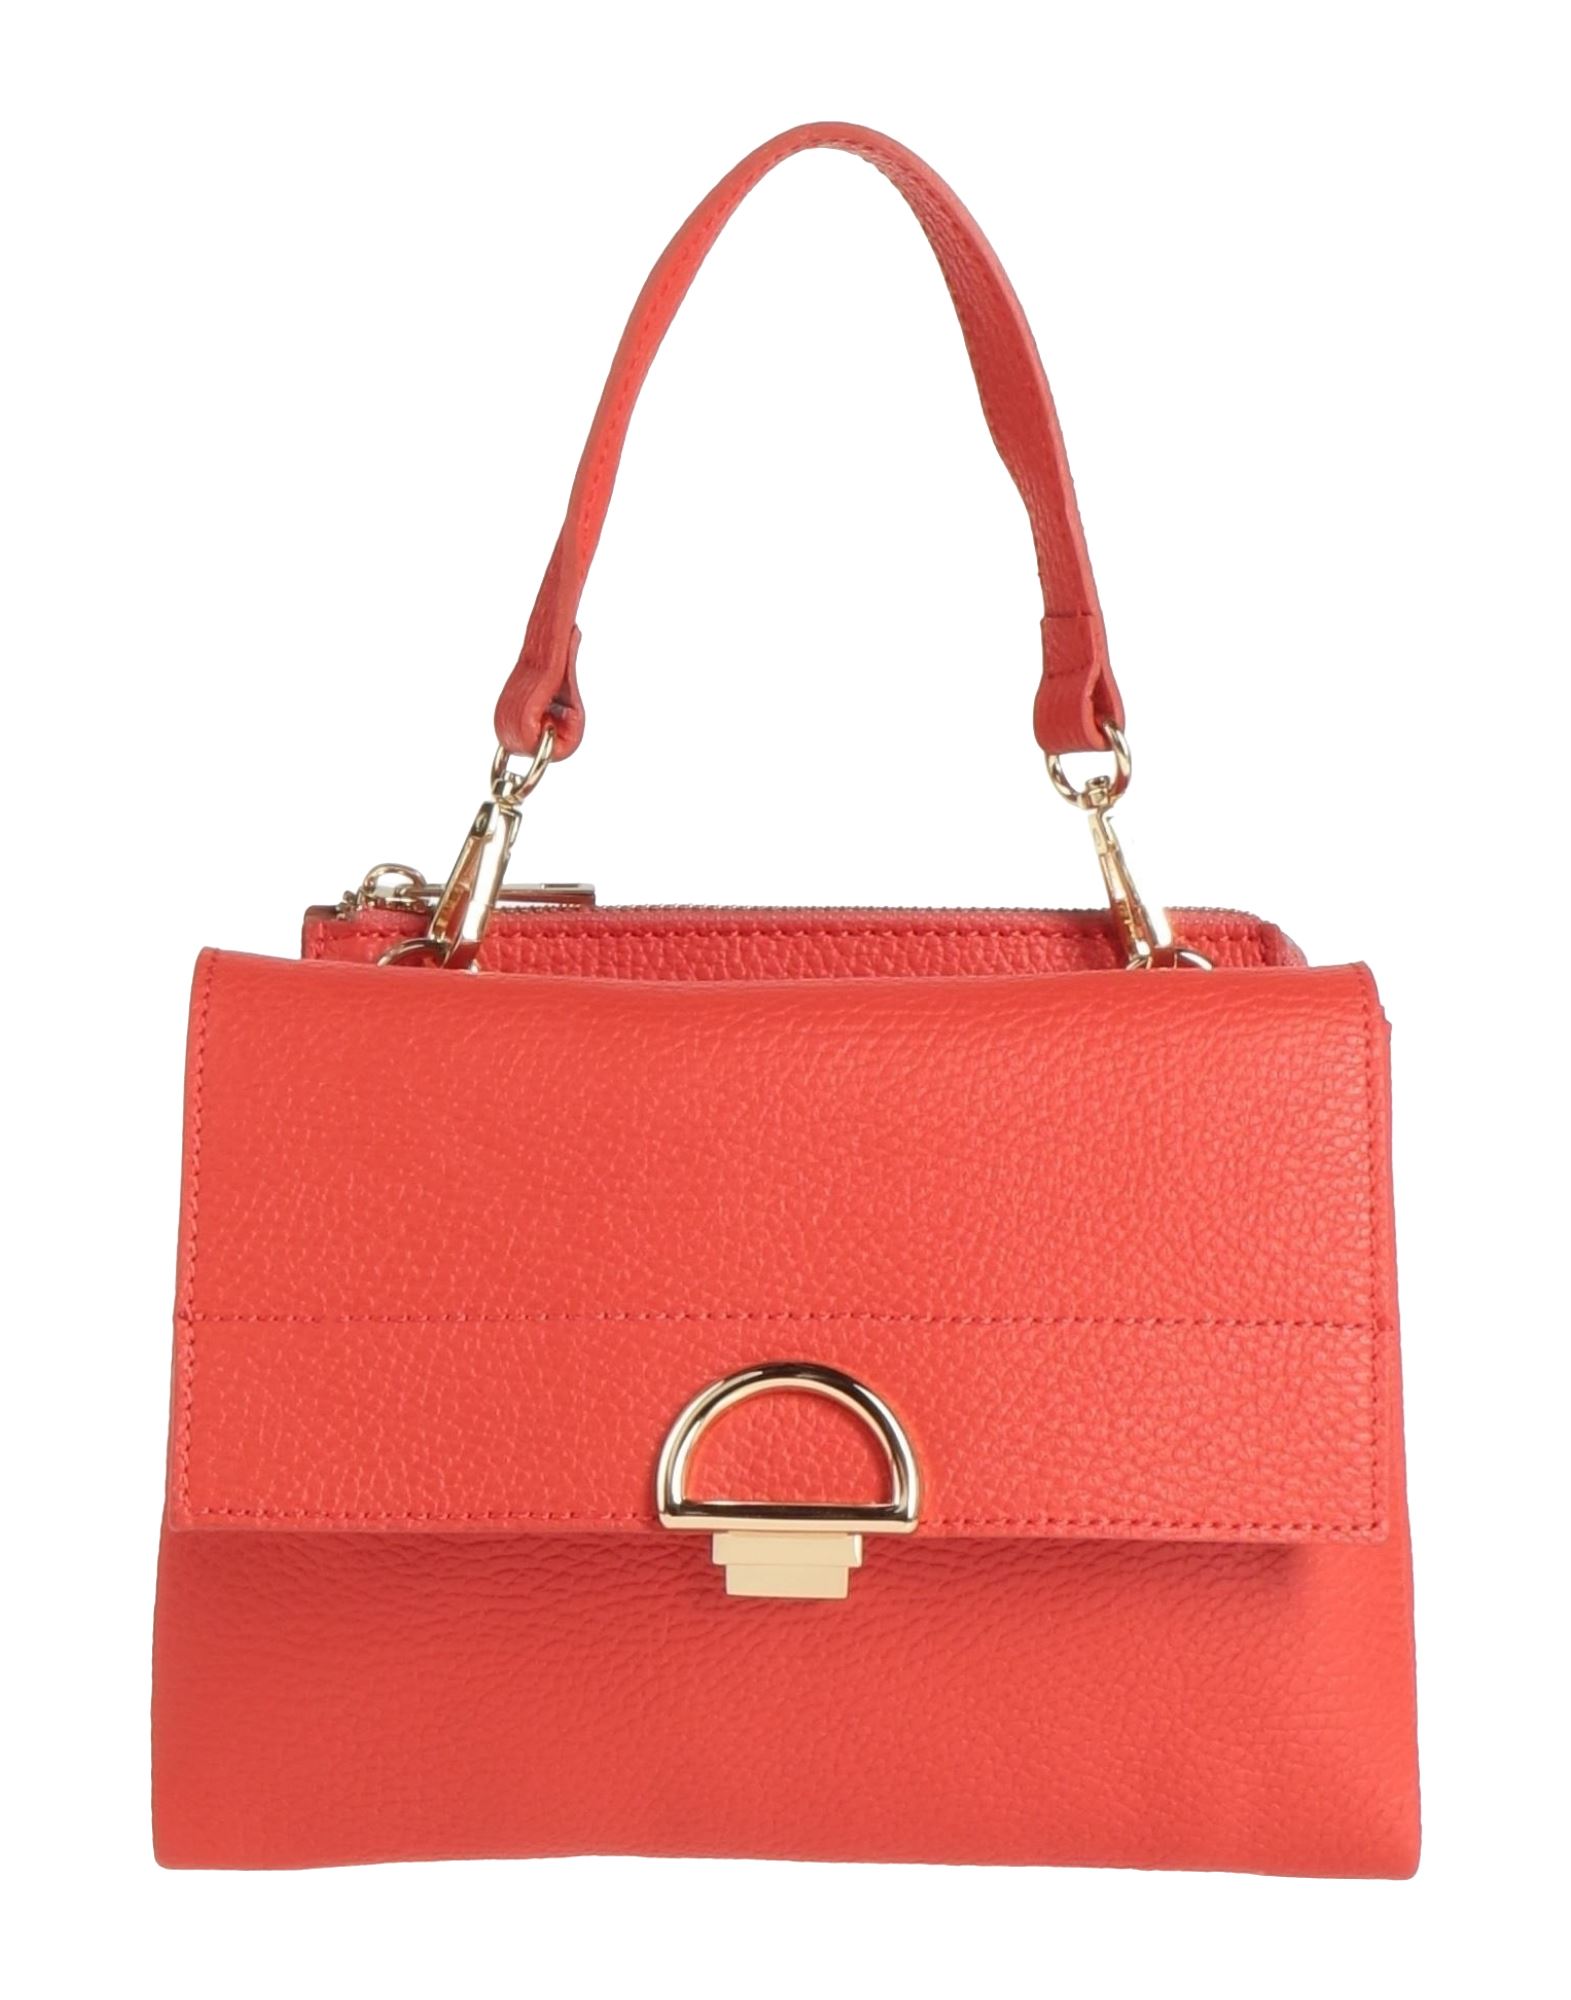 Ab Asia Bellucci Handbags In Tomato Red